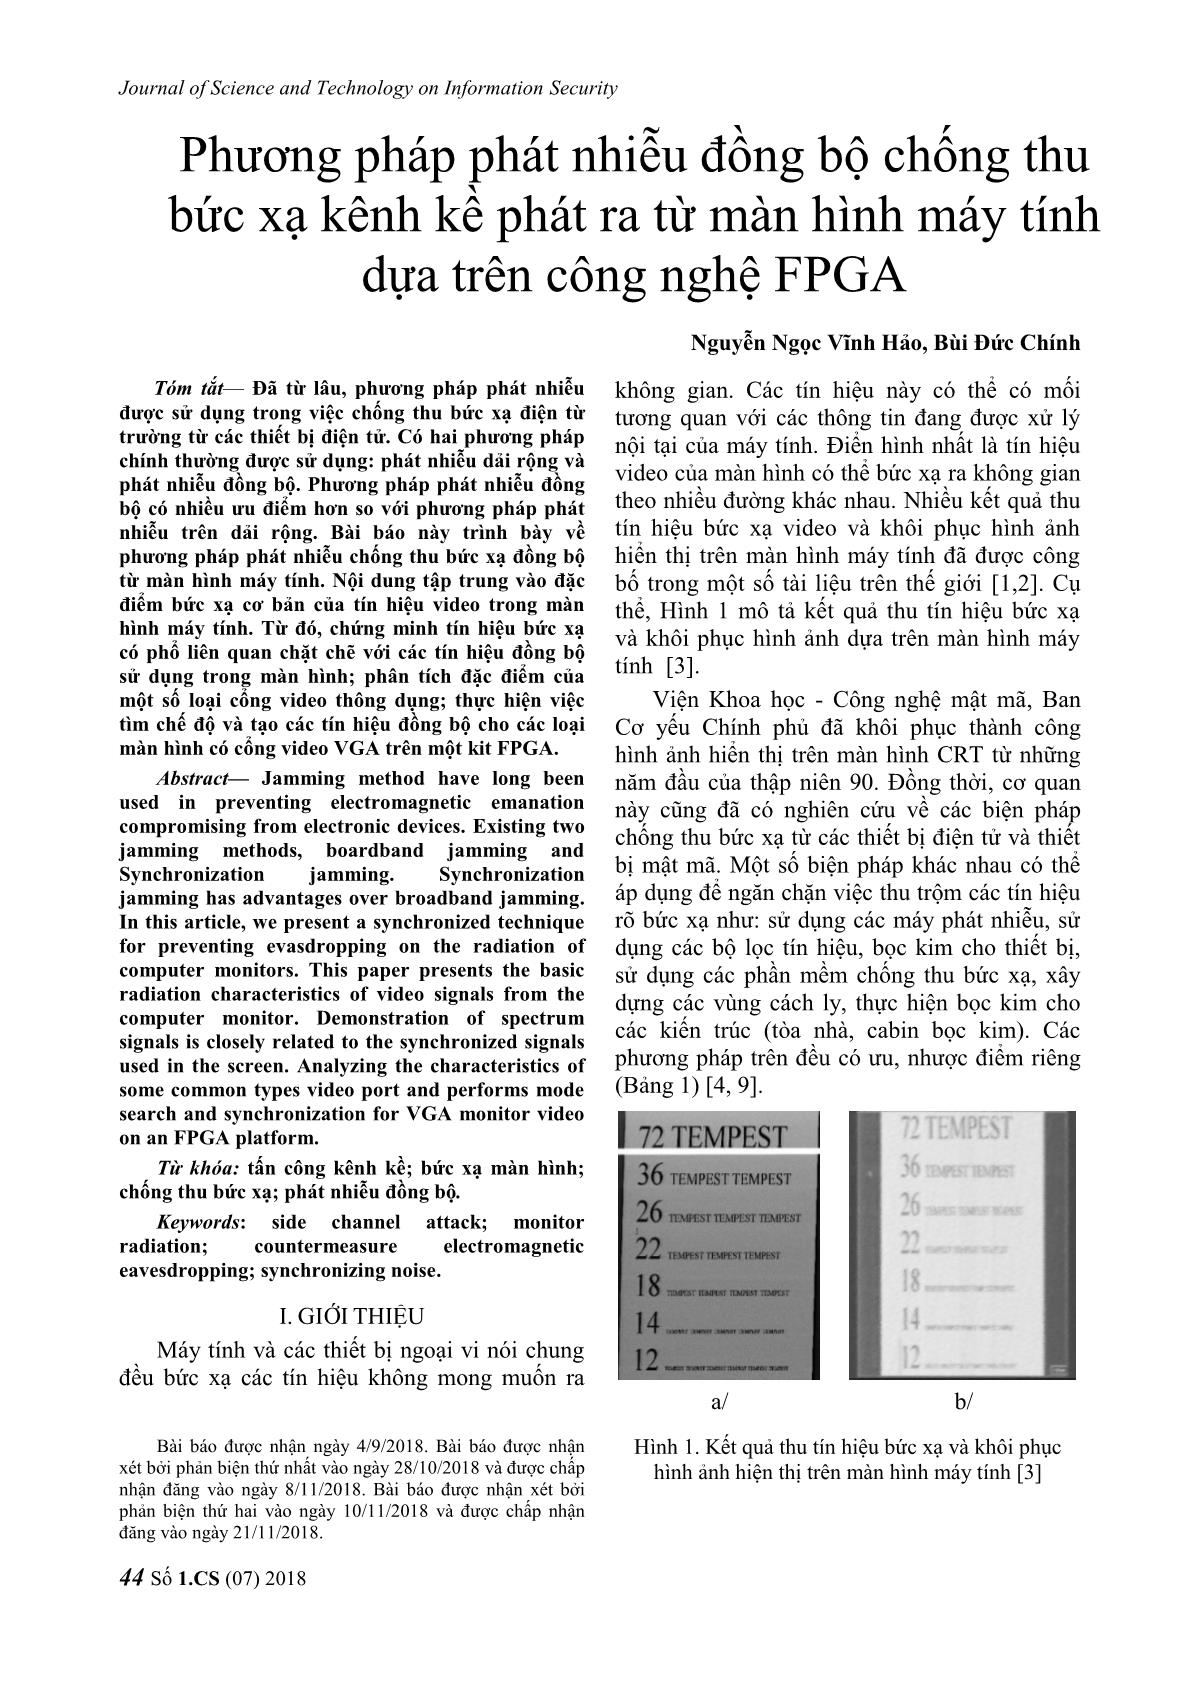 Phương pháp phát nhiễu đồng bộ chống thu bức xạ kênh kề phát ra từ màn hình máy tính dựa trên công nghệ FPGA trang 1